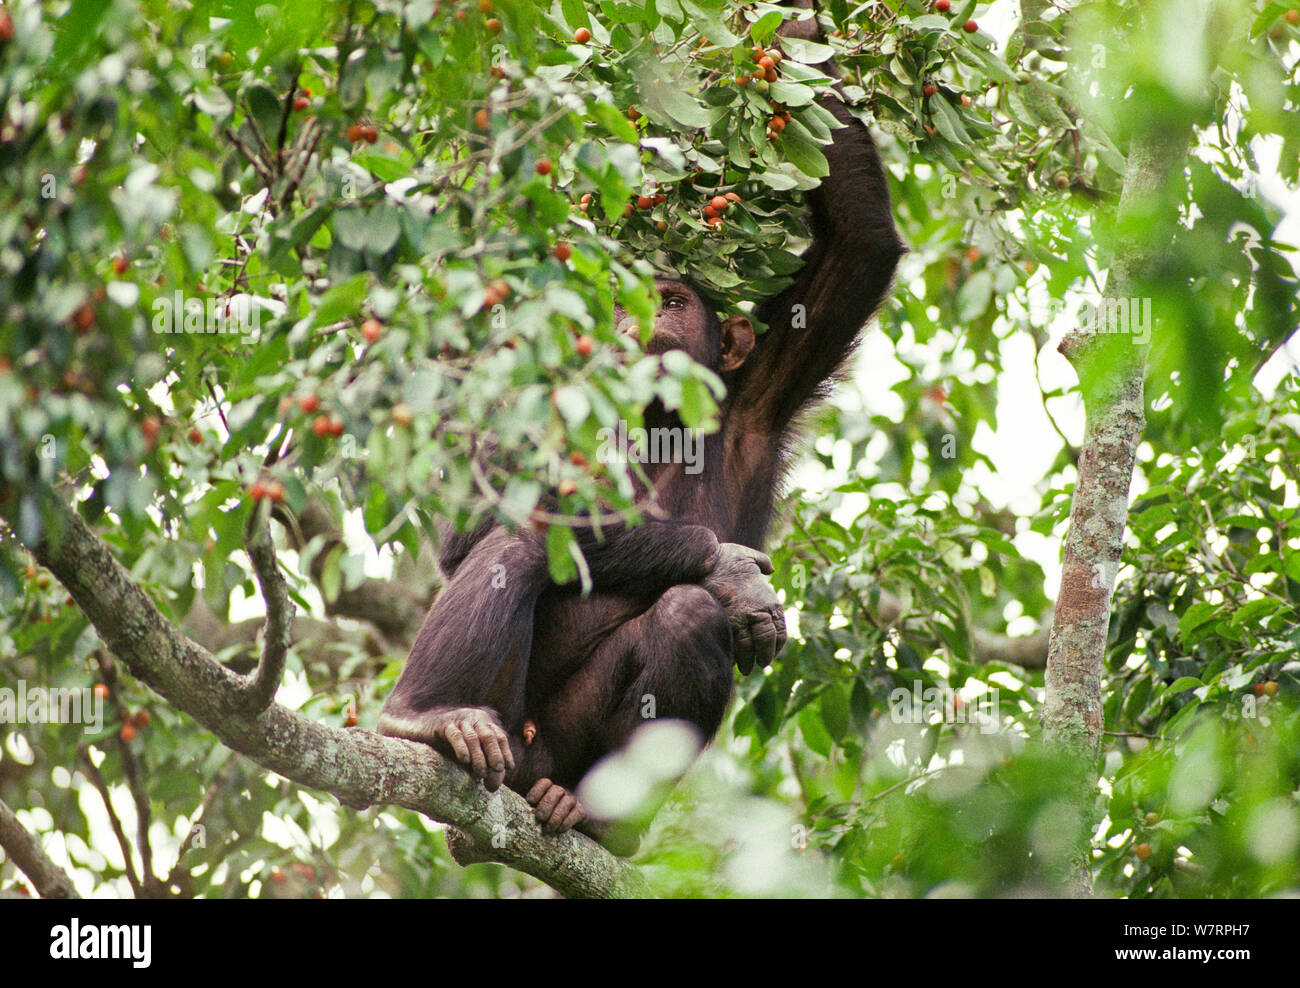 Los chimpancés adultos en árbol frutal con alambre snare dañados, en mano de árbol frutal (Pan troglodytes schweinfurthii). Tongo, el Parque Nacional de Virunga, Kivu, República Democrática del Congo Foto de stock